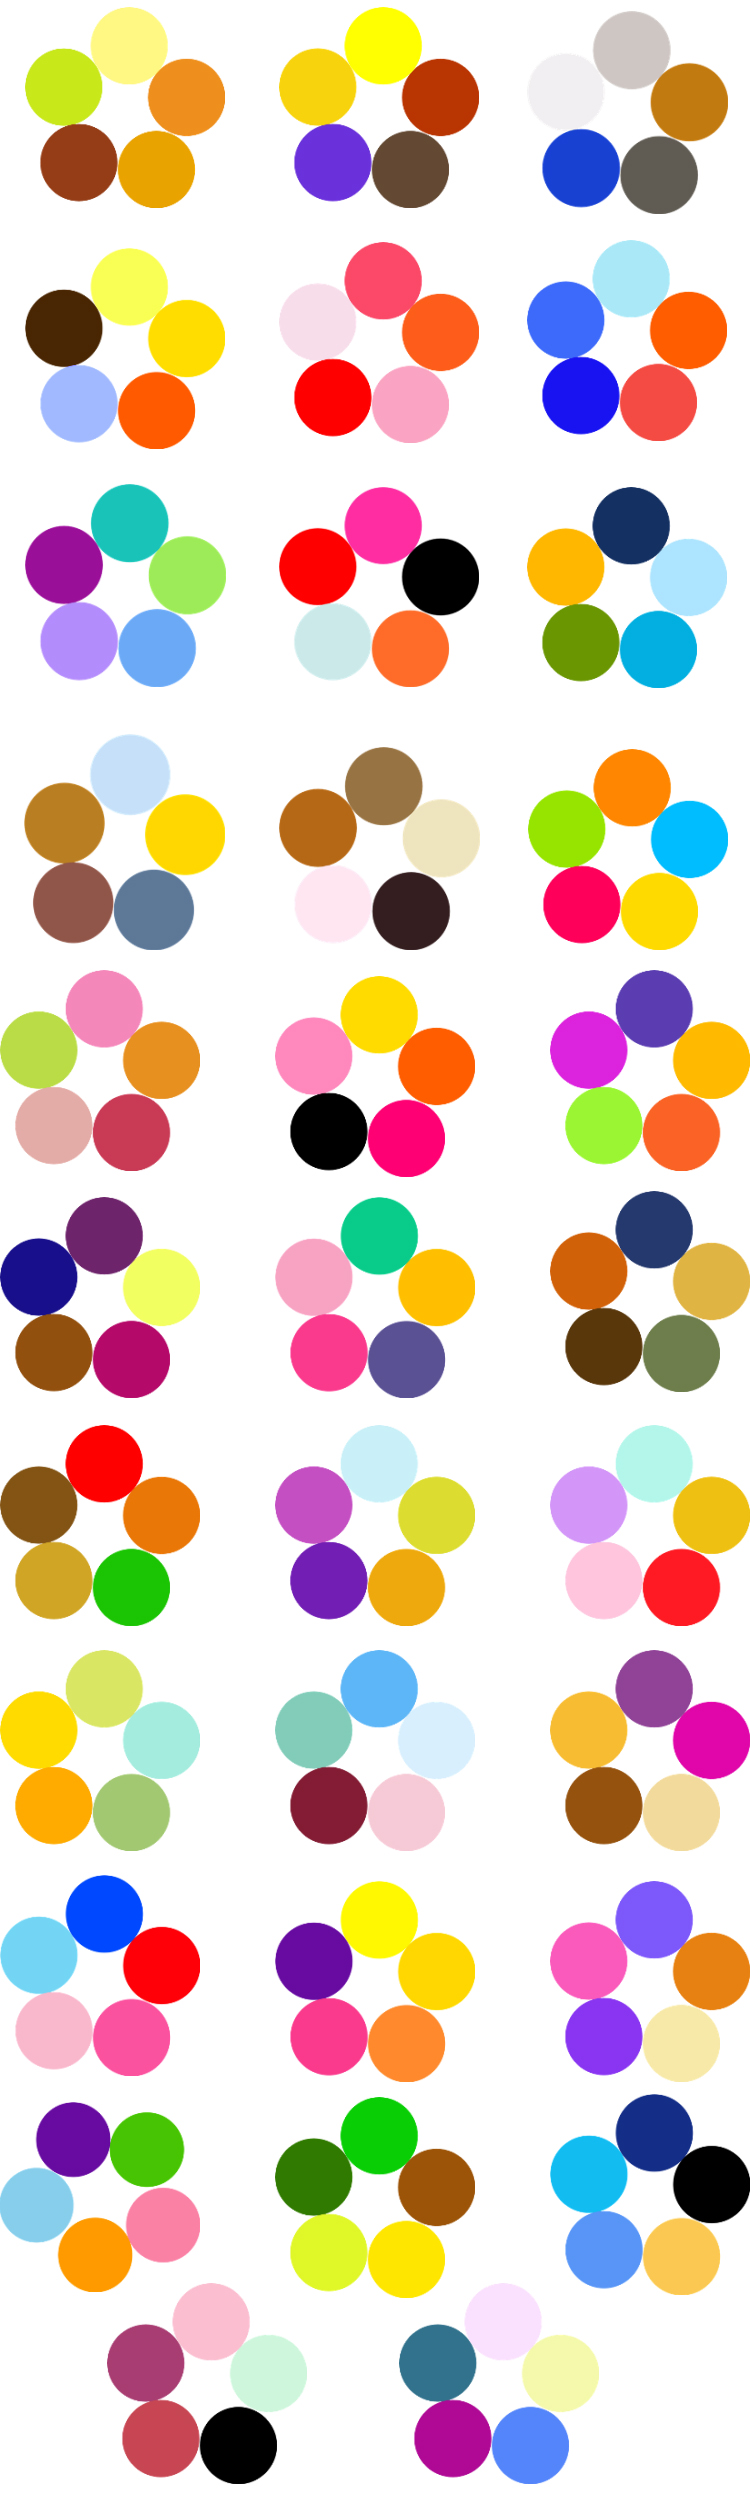 Цветовой Круг Иттена для создания гармоничных цветовых комбинаций, фото № 10